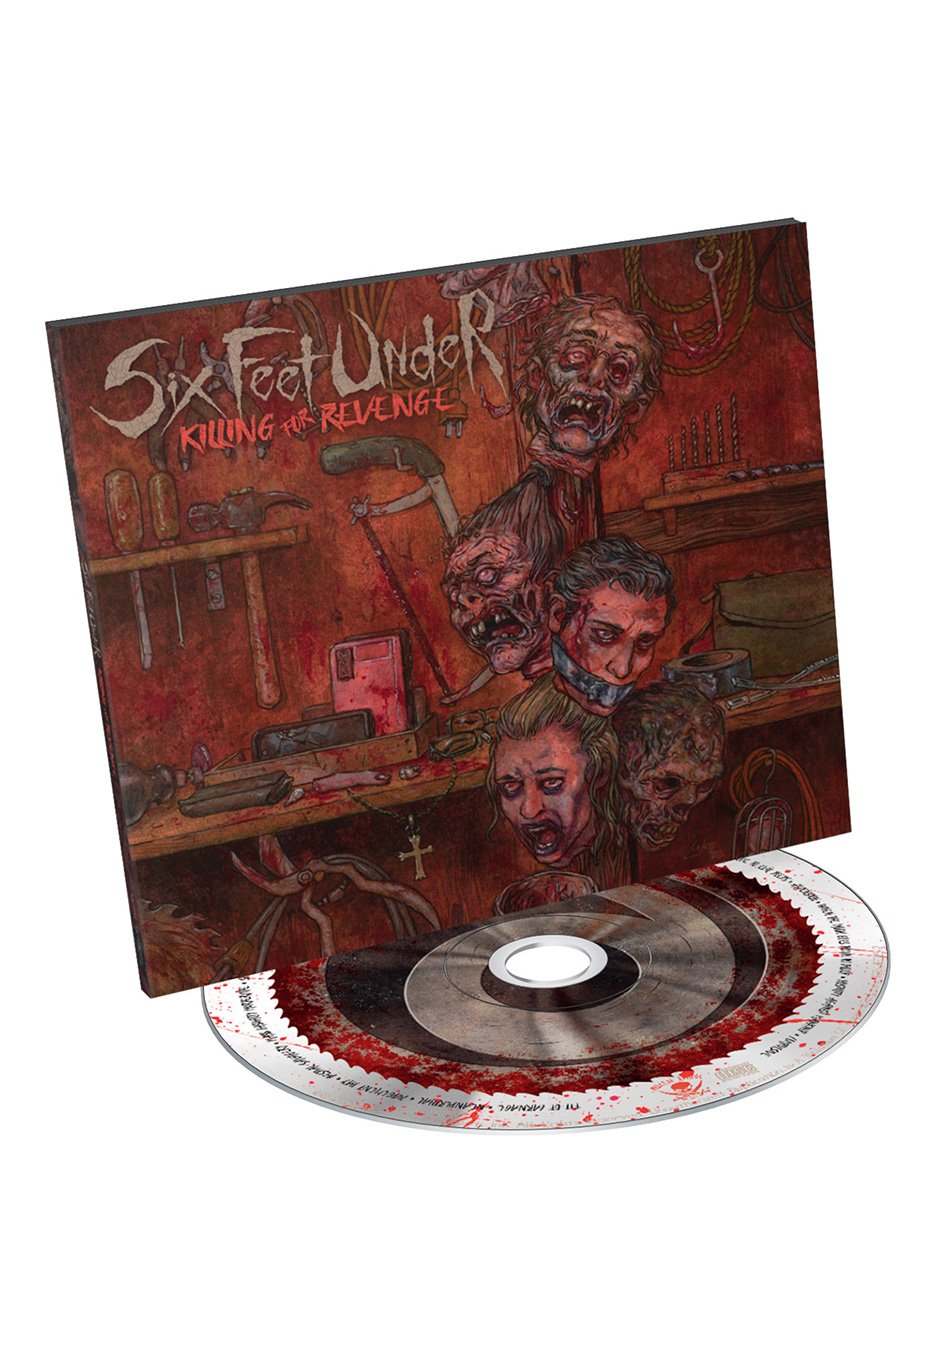 Six Feet Under - Killing For Revenge - Digipak CD